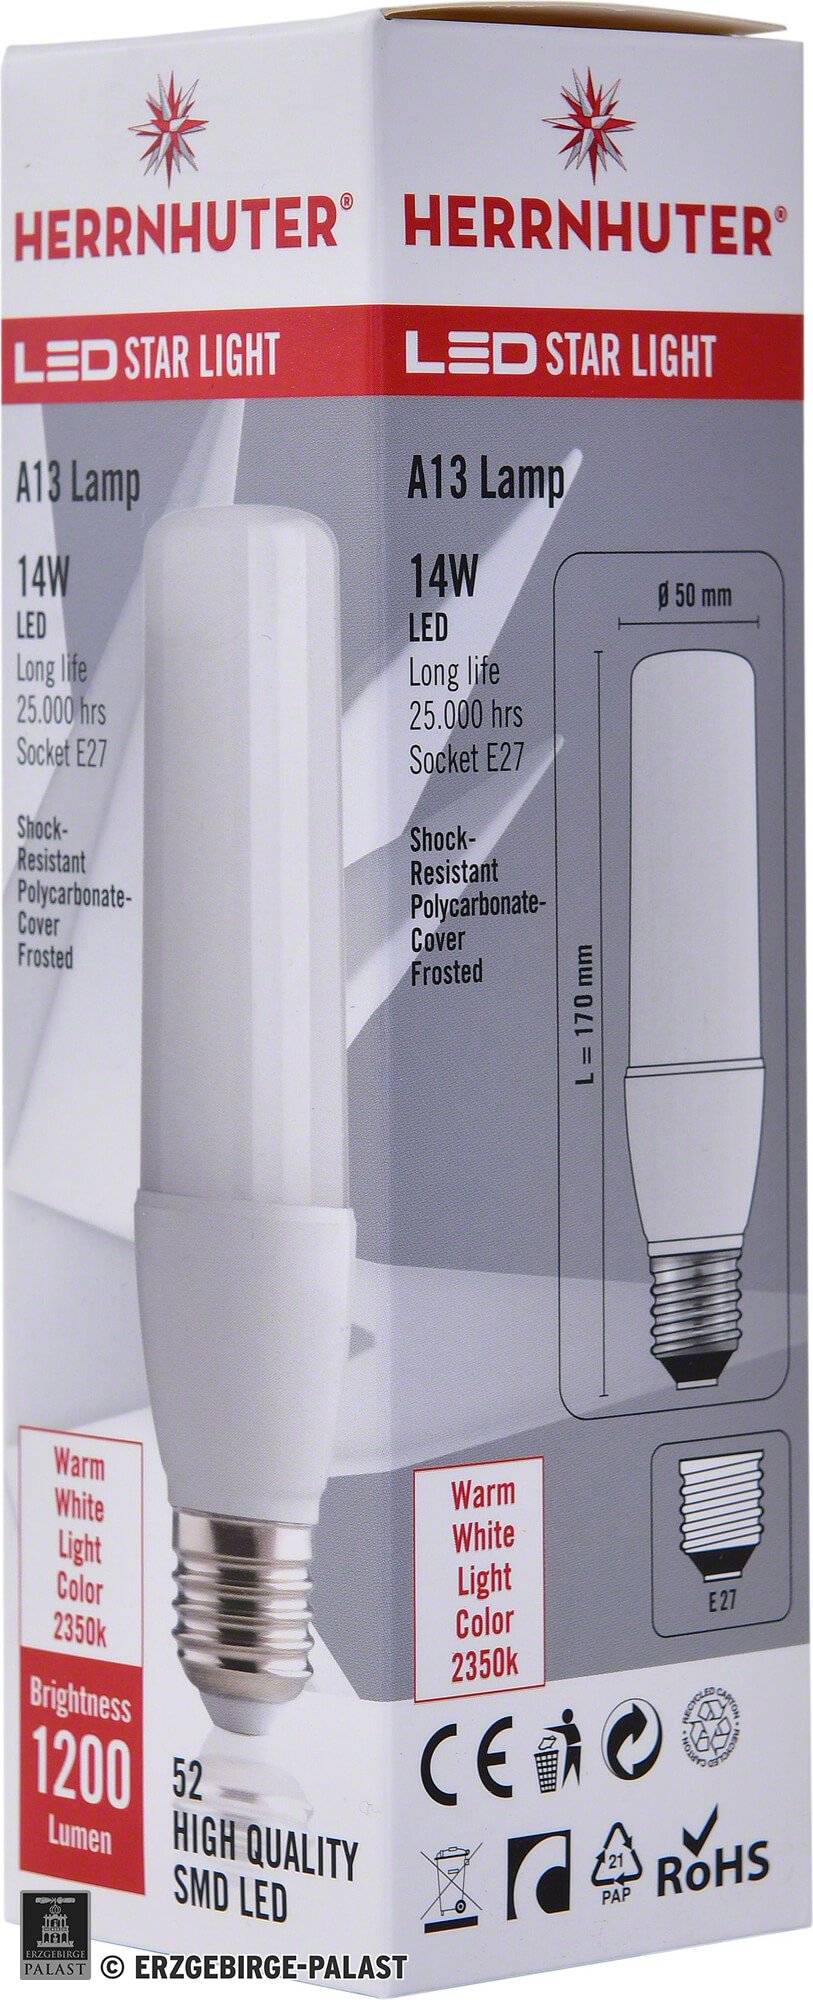 Station Verslaving generatie LED Light Bulb E27, 14 Watt by Herrnhuter Sterne